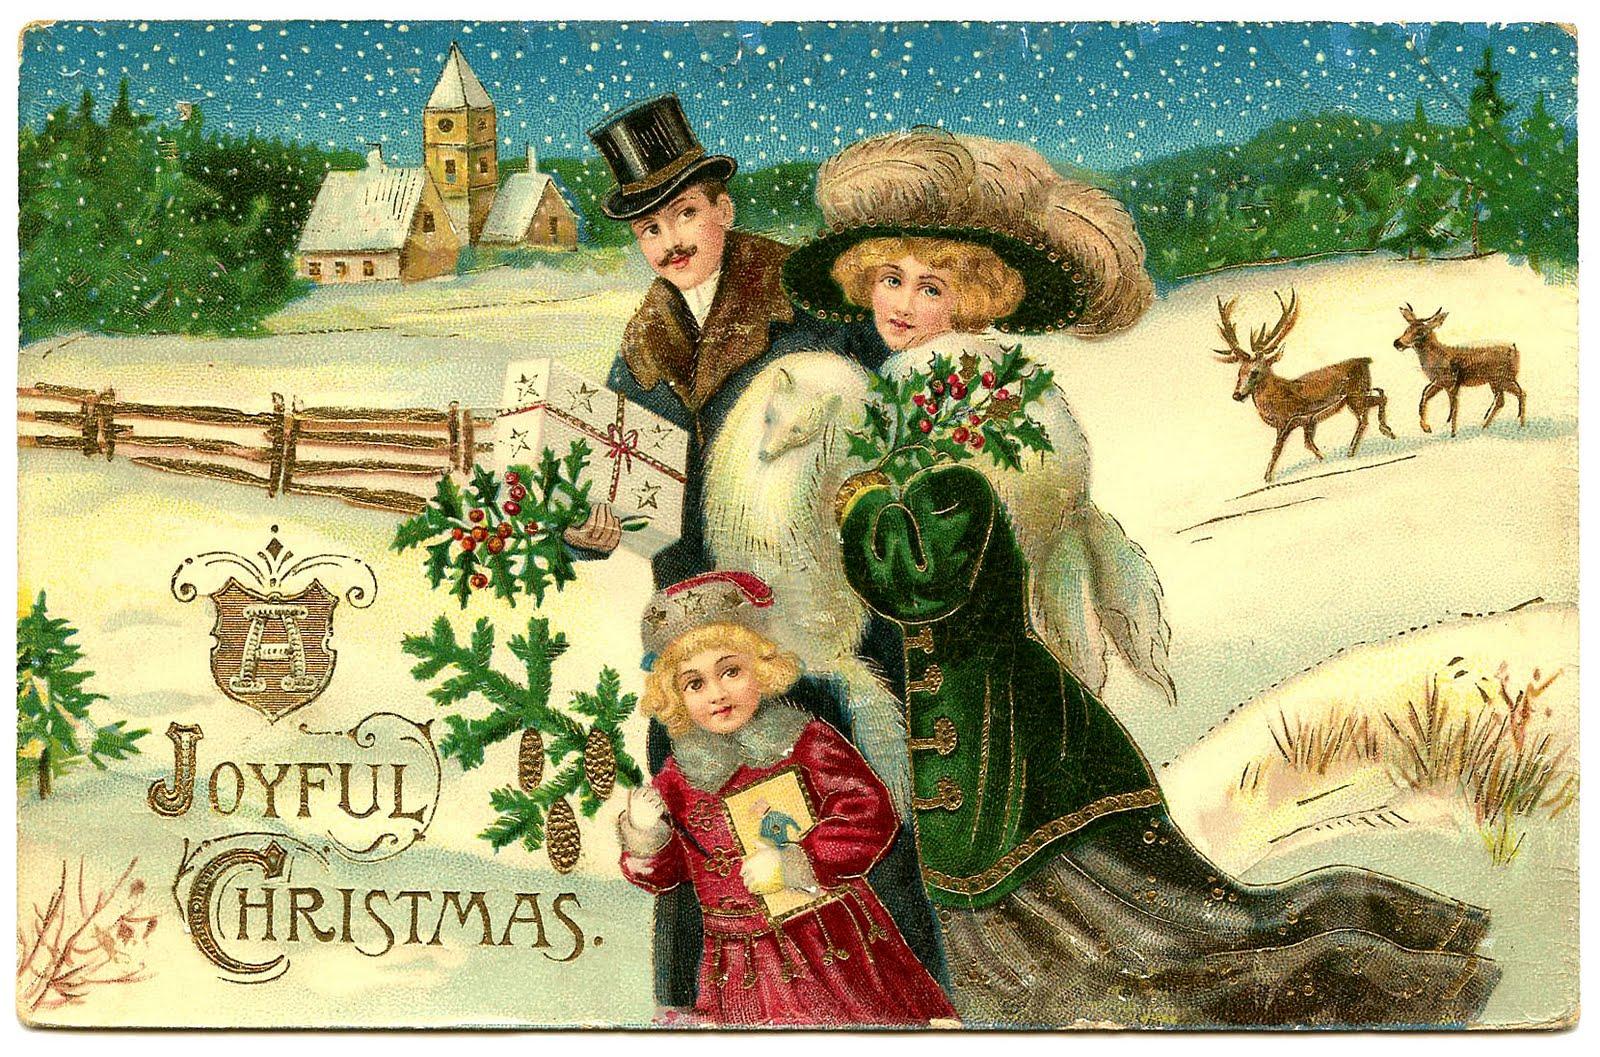 Vintage Christmas Scenes Wallpapers - Top Free Vintage Christmas Scenes ...